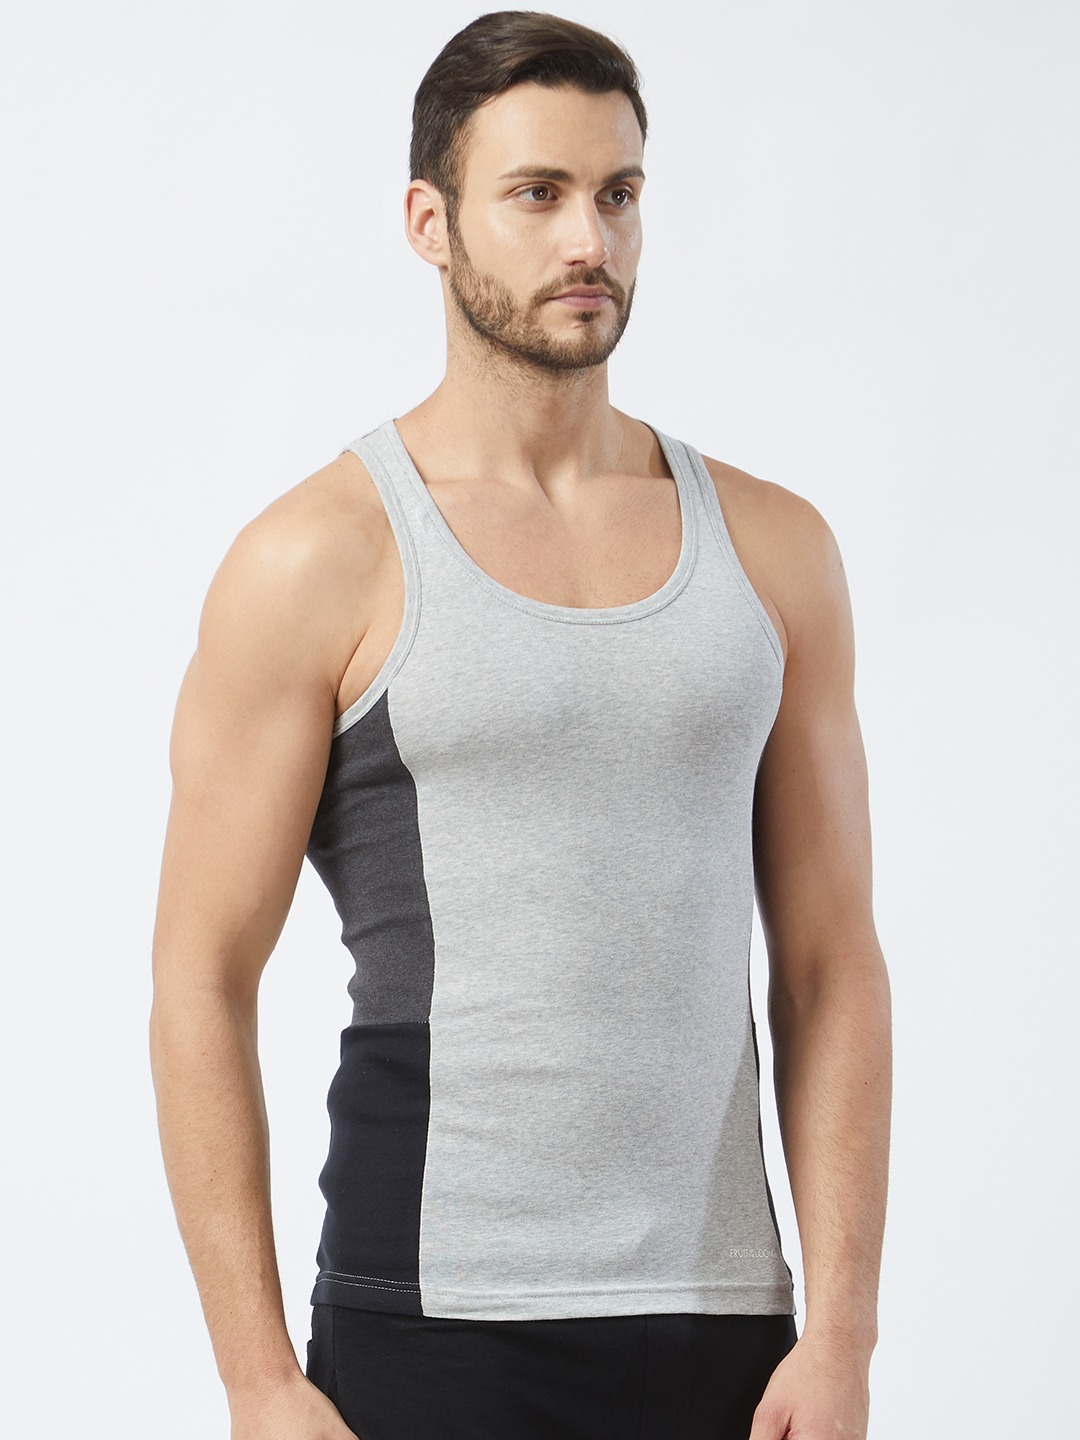 Clothing Innerwear Vests | Fruit of the loom Men Pack of 2 Innerwear Vests MFV02-N-2P-C5 - XZ38357